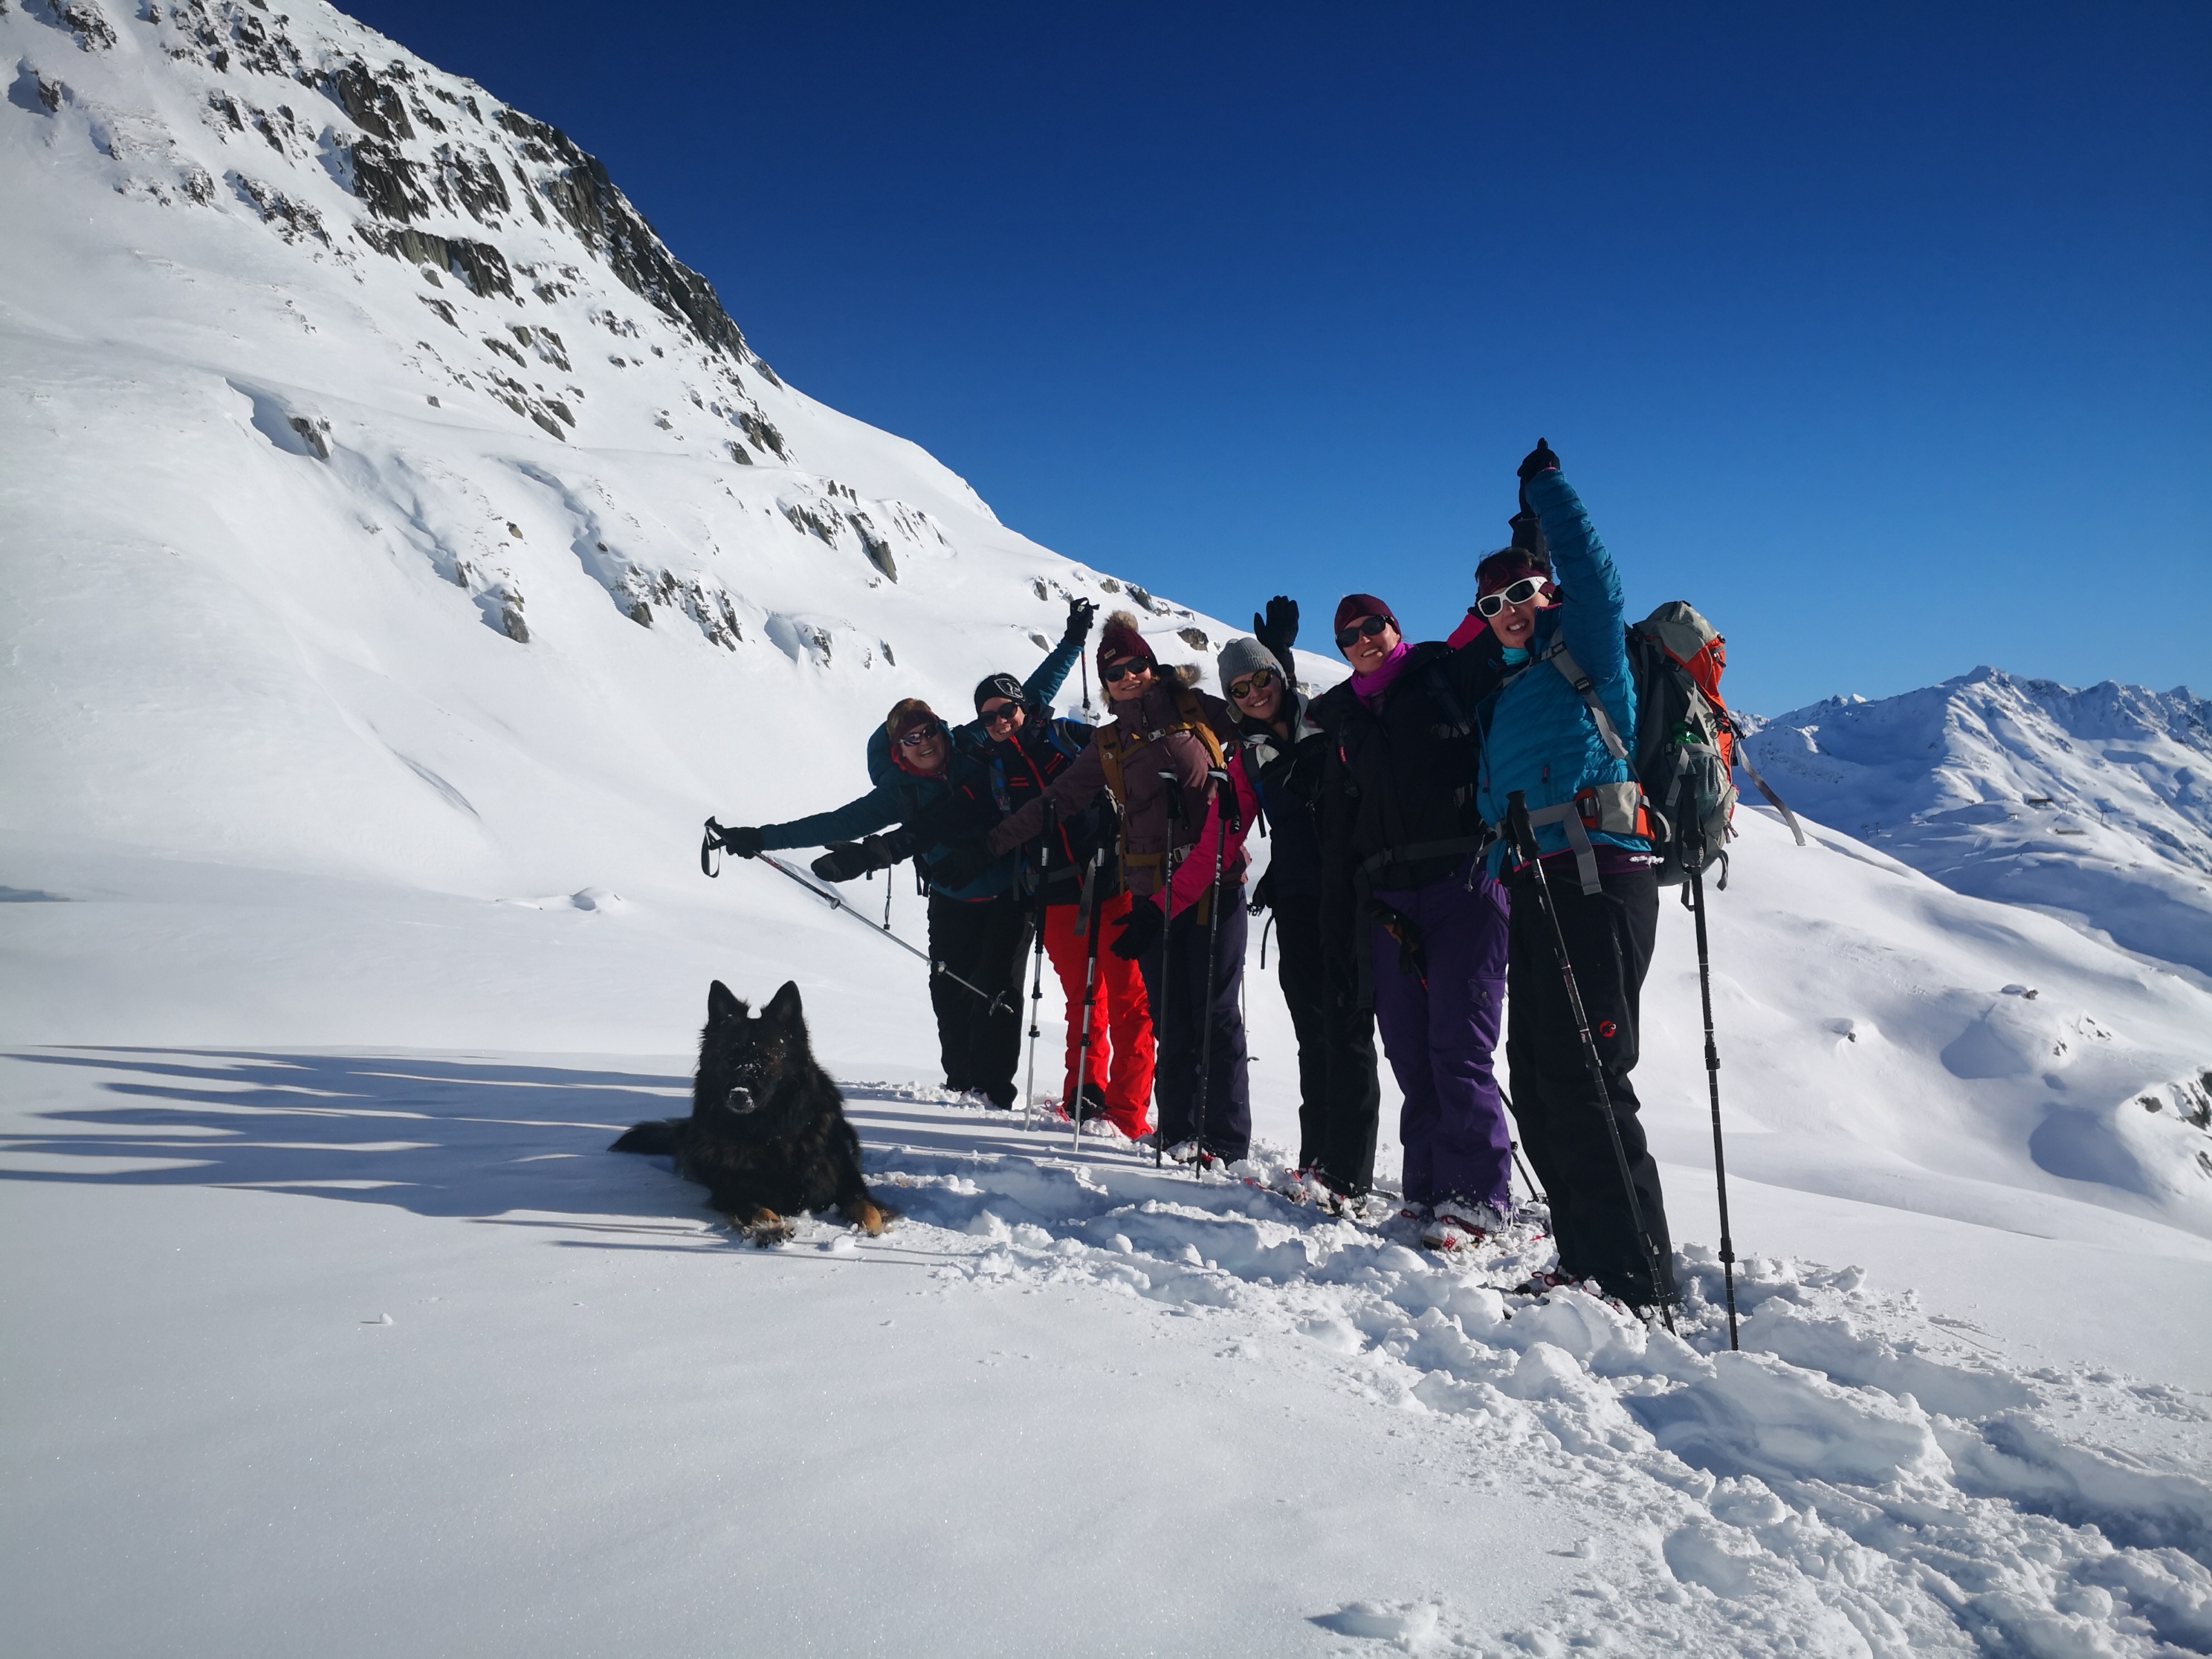  Schneeschuhtour mit Hund Berner Oberland weitere Daten nach Absprache!